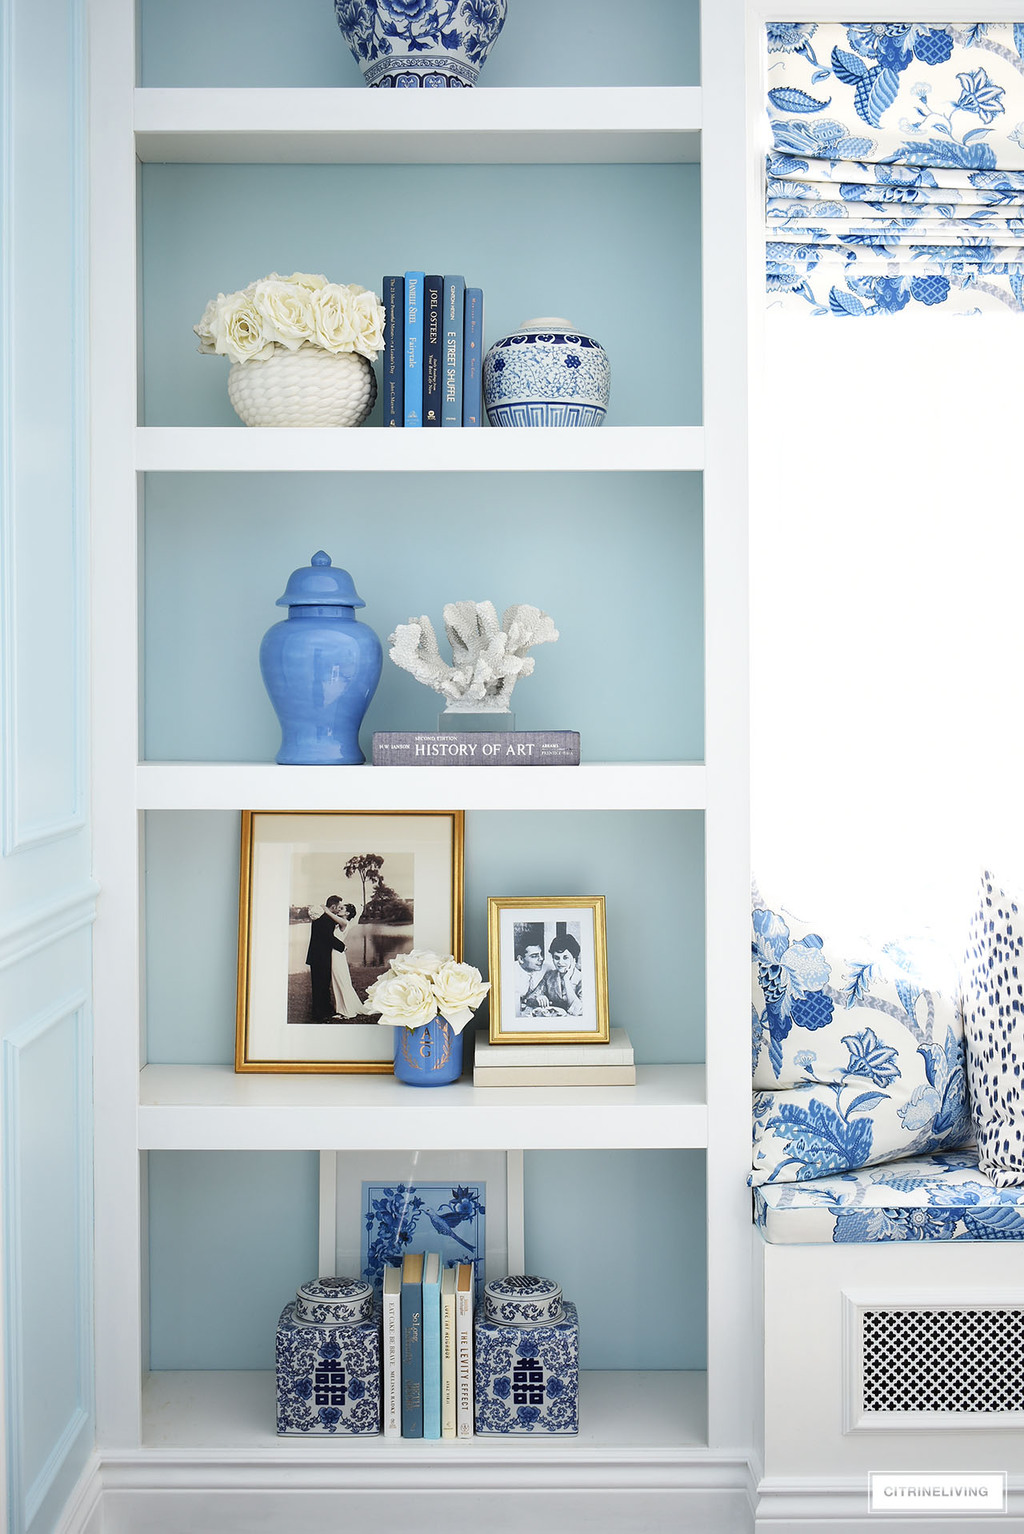 BOOKSHELF IN ELEGANT HOME OFFICE IN BLUE + WHITE CHINOISERIE